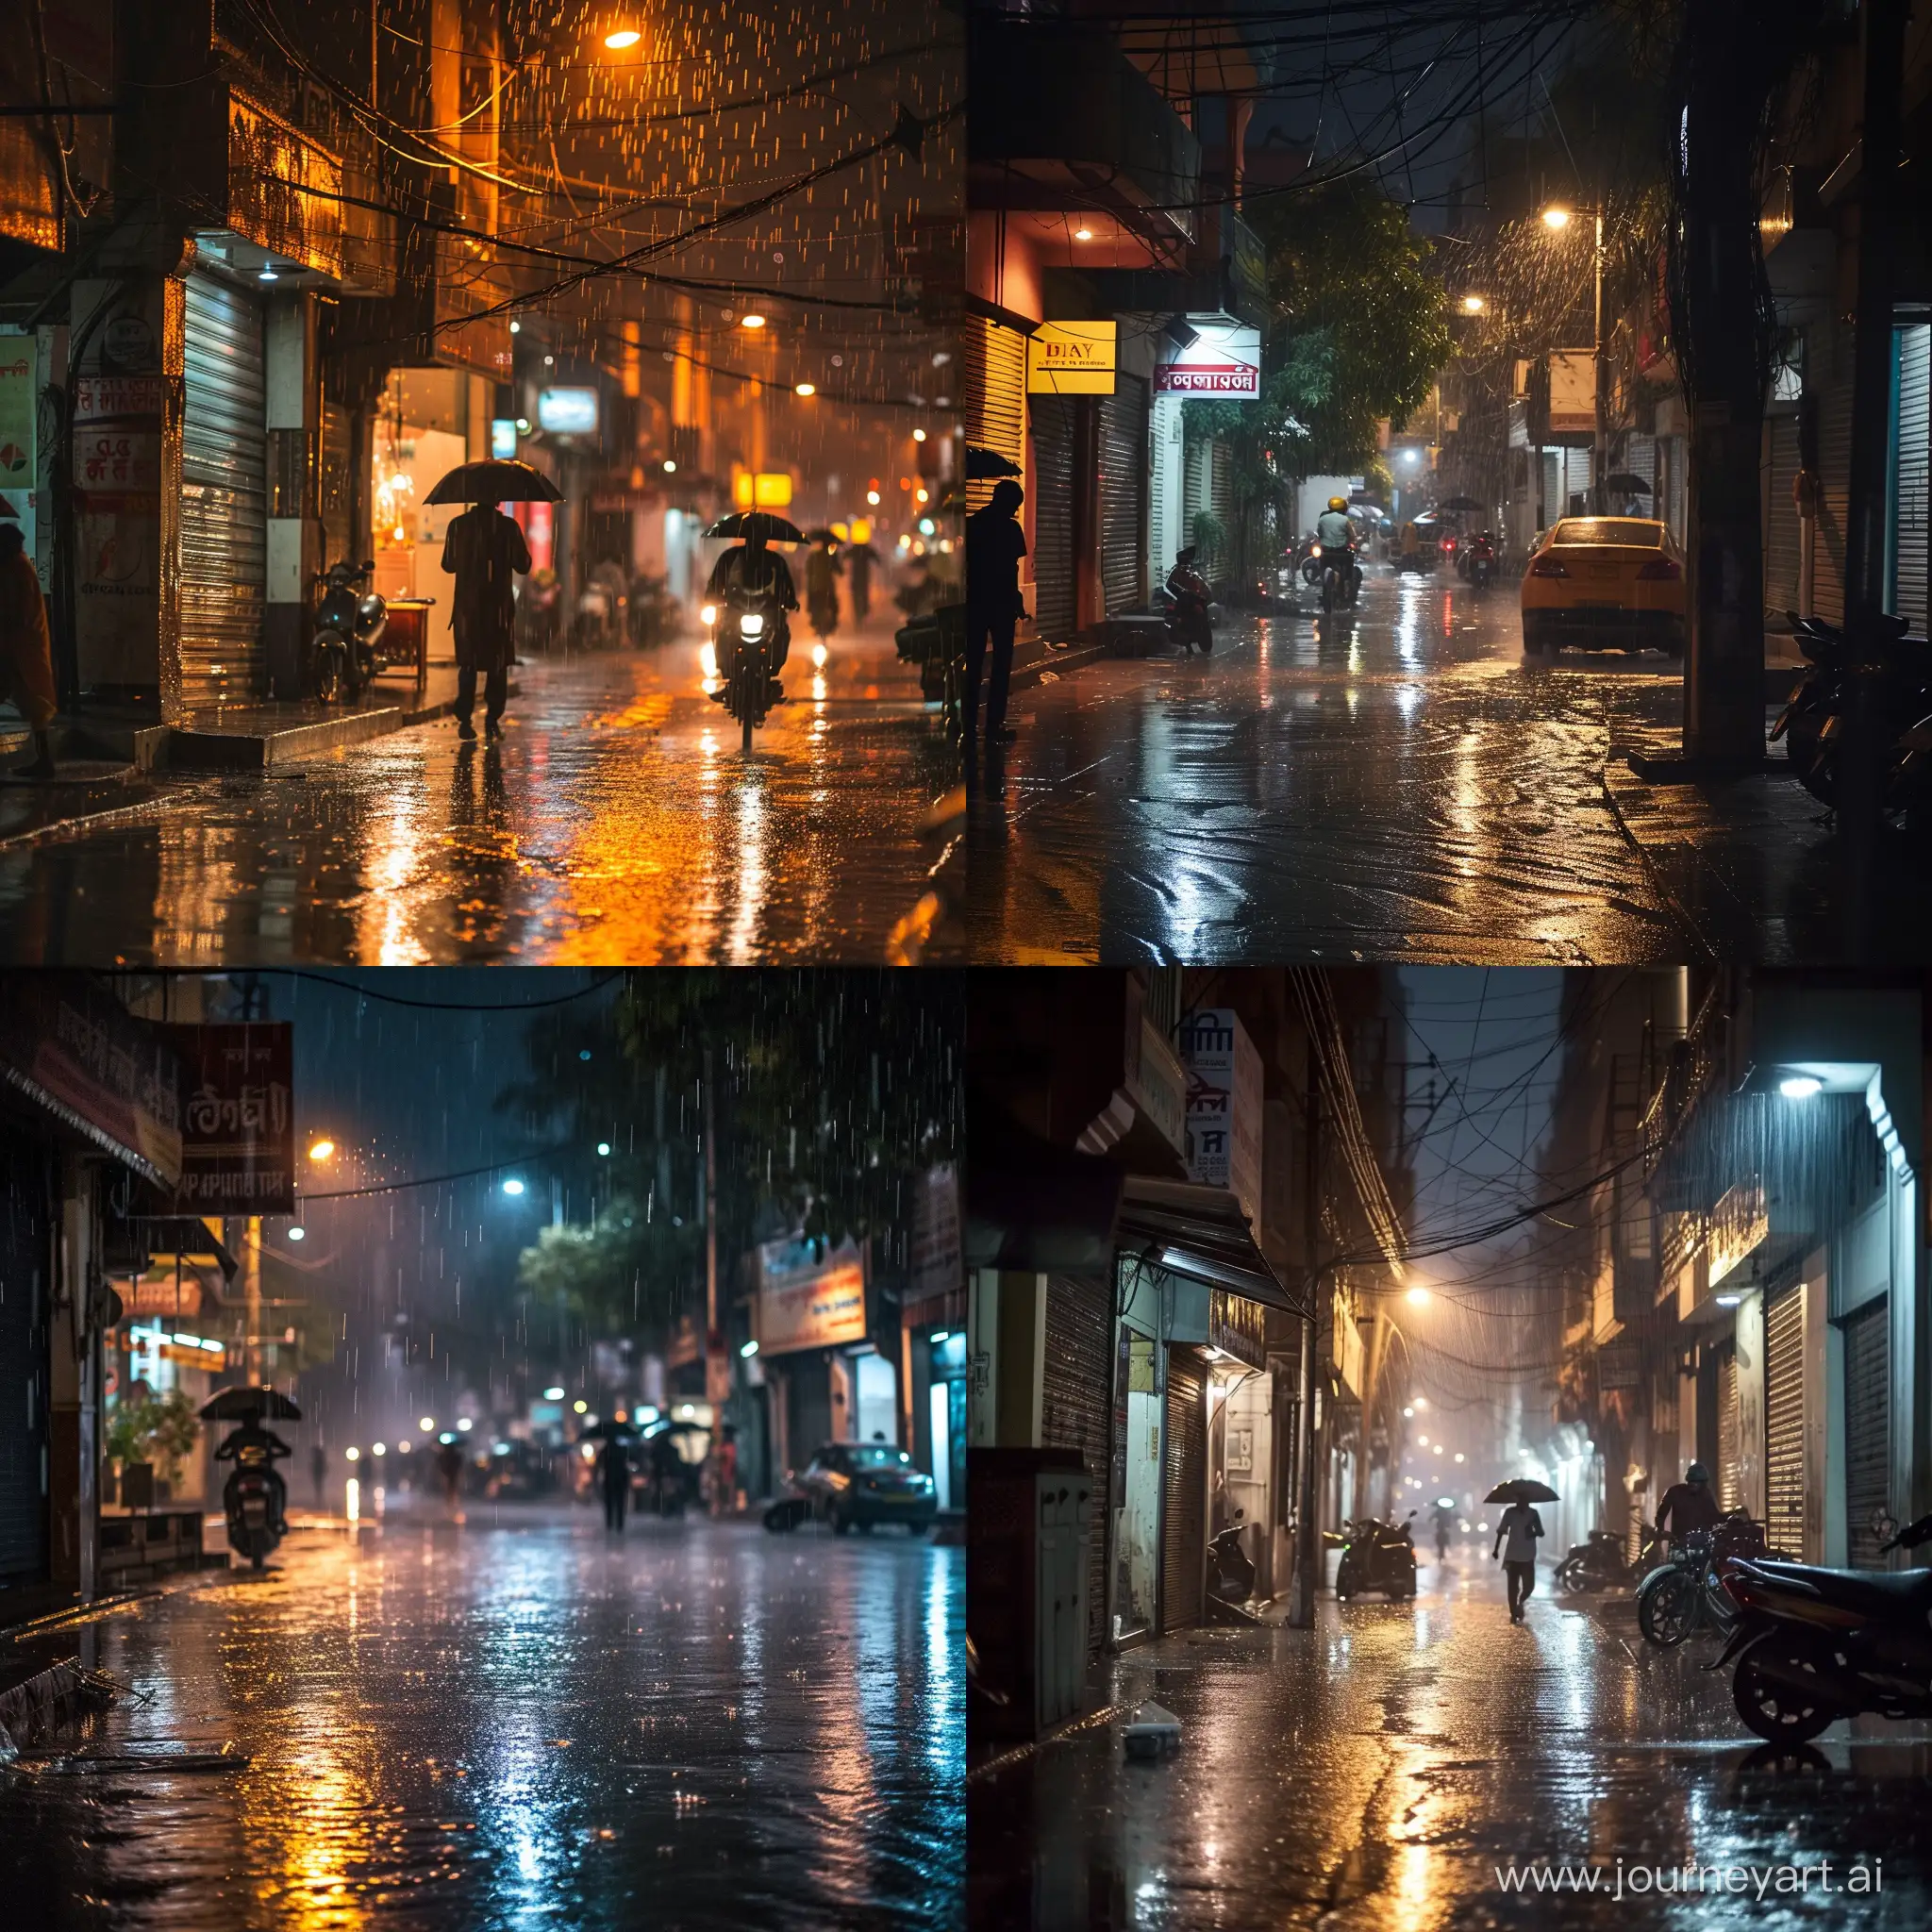 Raining in delhi street at night